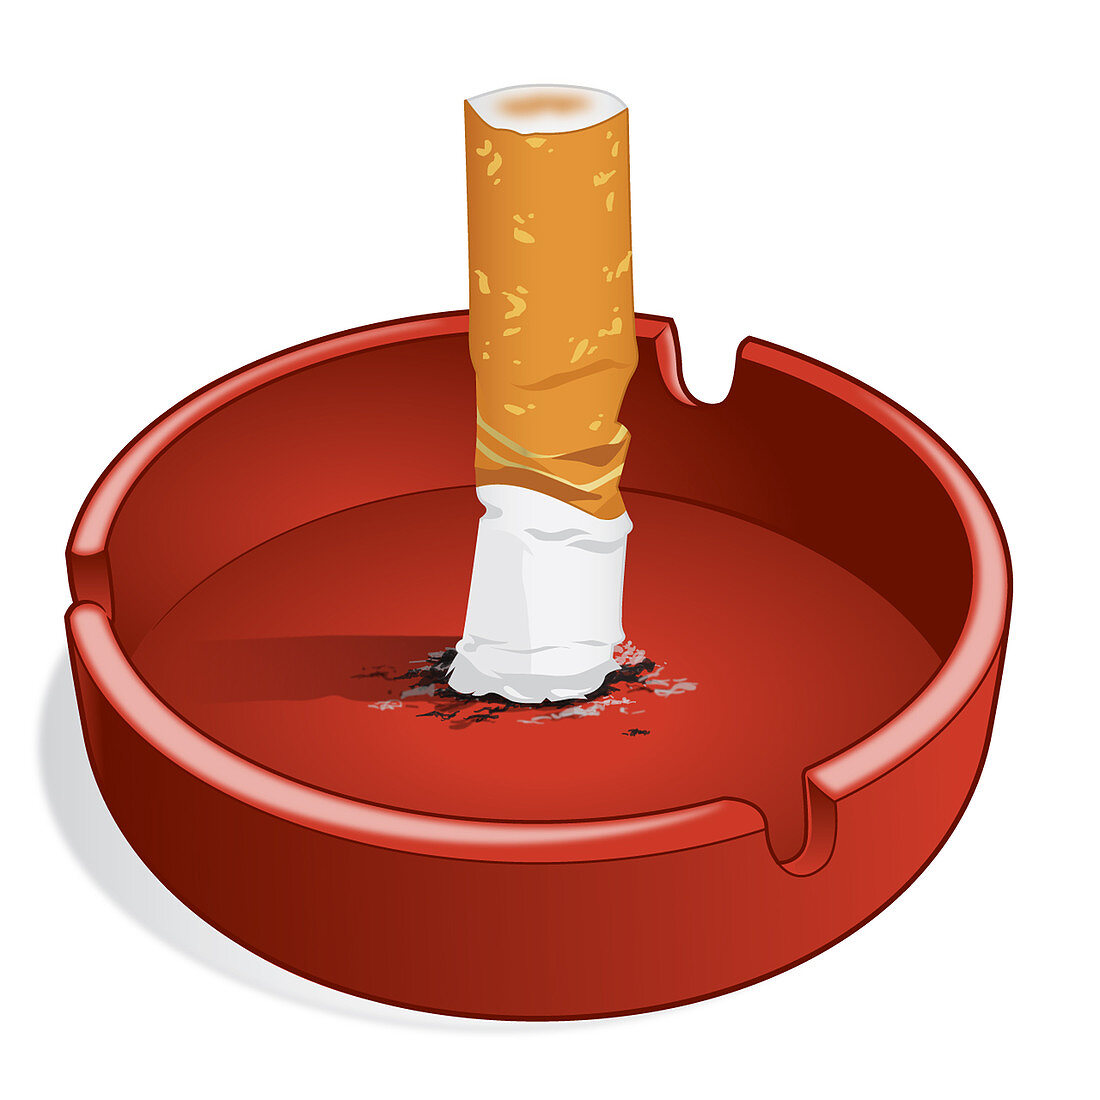 Cigarette Smoking: Health Hazard